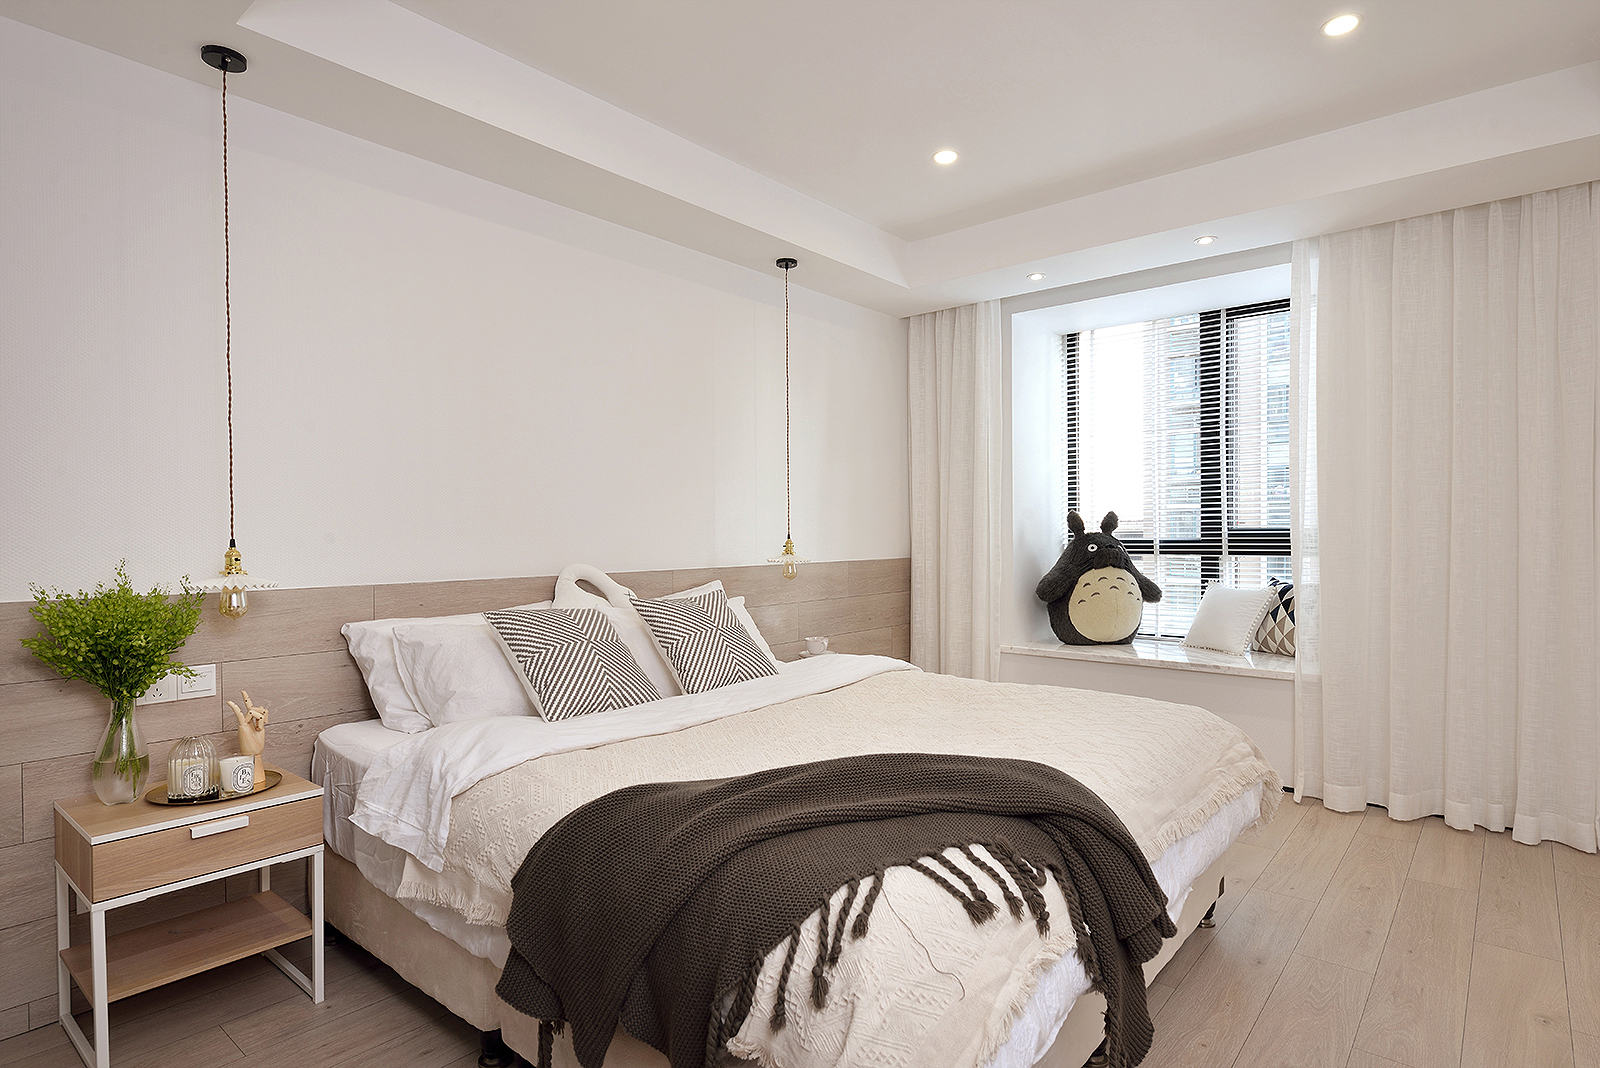 户型现代简约卧室装修效果图现代简约二居卧室装修效果图灰色极简风格